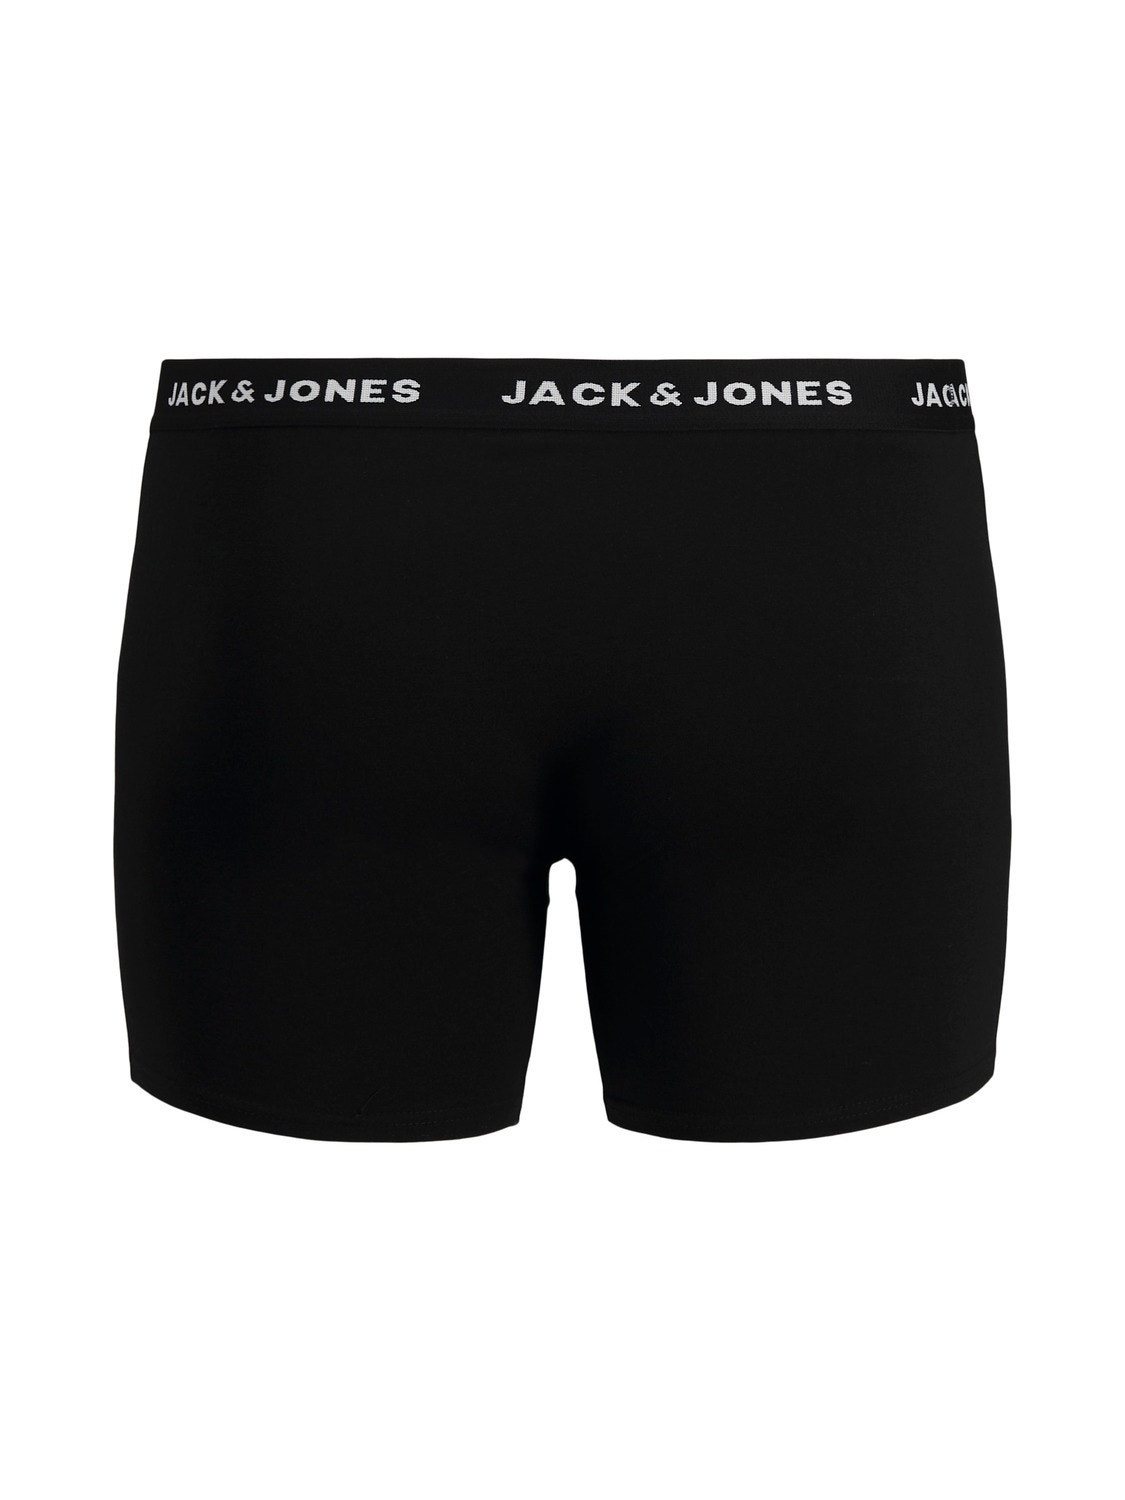 Jack & Jones Plus Size 5-pak Trunks -Black - 12194944